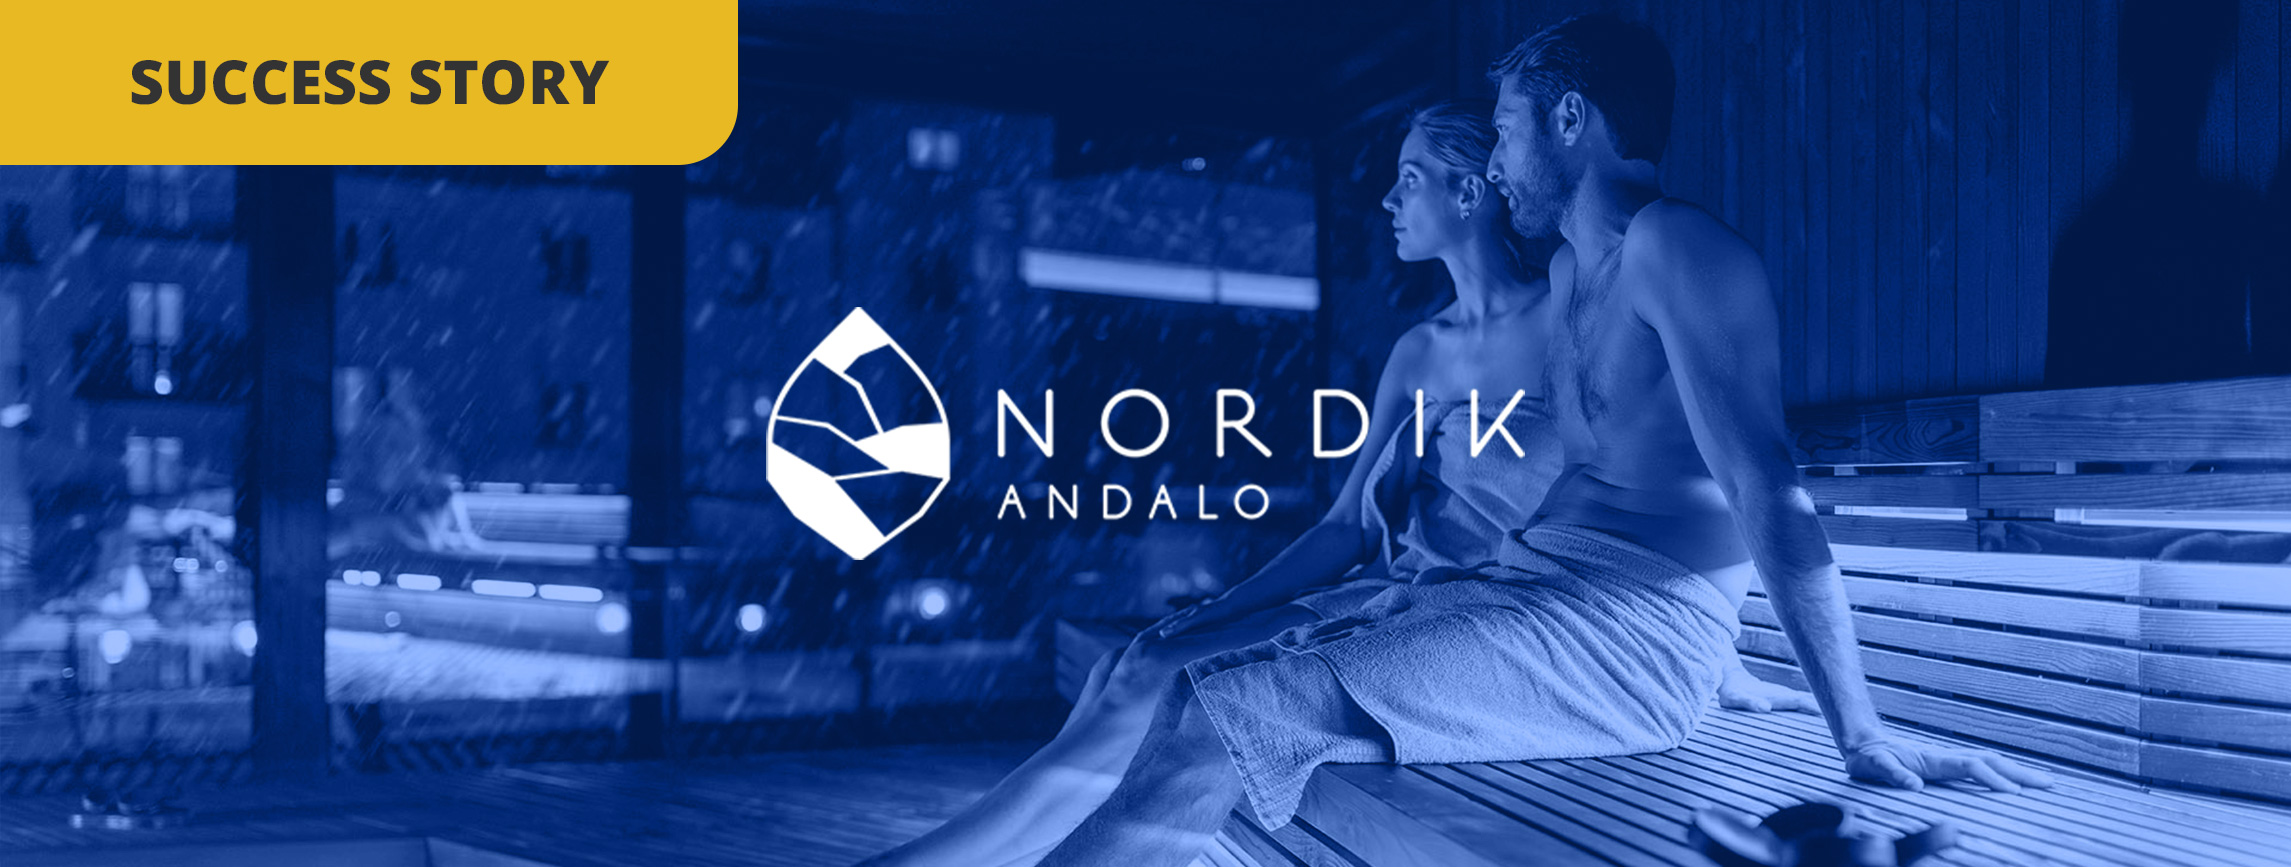 Comment l’Hôtel Nordik utilise la gestion des avis et des feedbacks pour atteindre la première place sur Tripadvisor